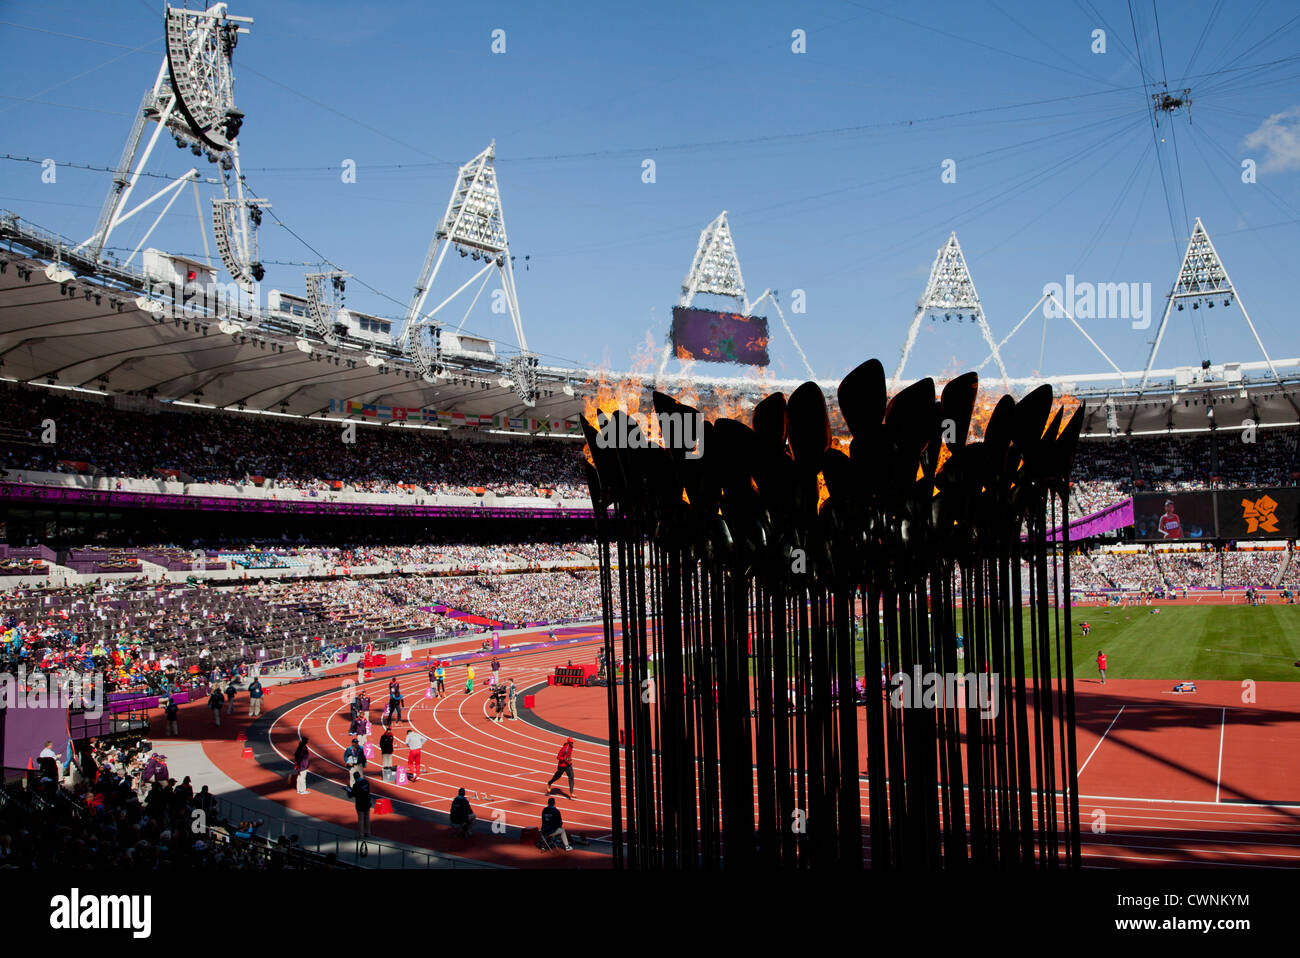 La flamme olympique au Stade olympique de 2012 à Londres durant les Jeux Paralympiques Banque D'Images